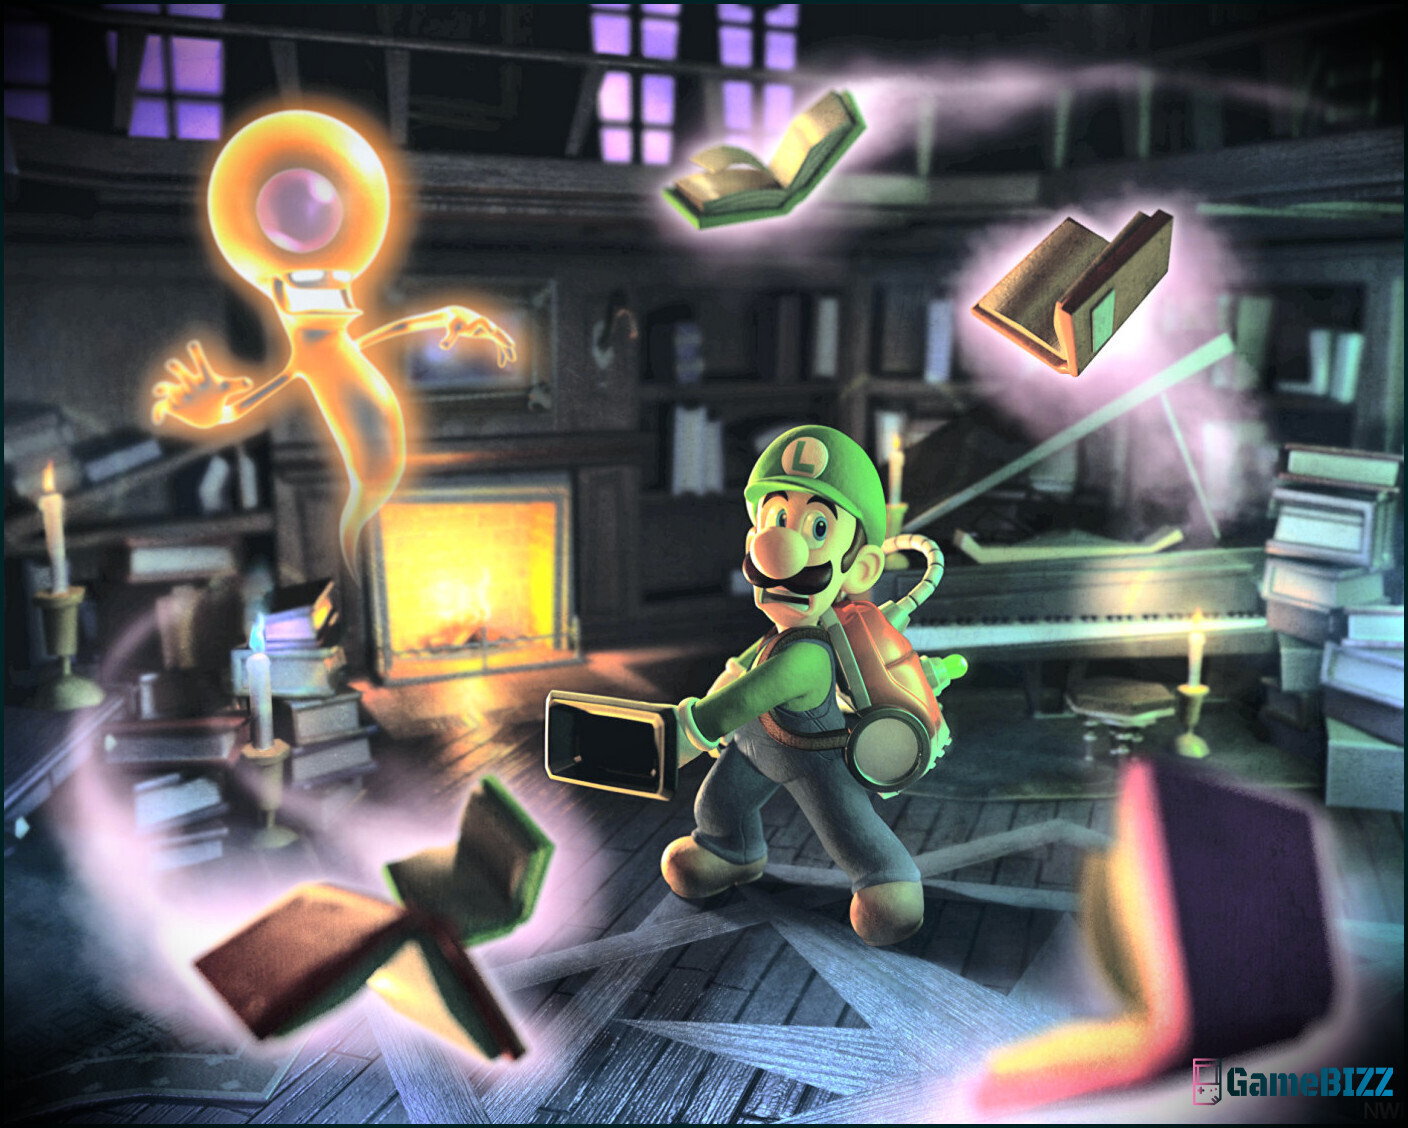 Die Entwickler von Luigi's Mansion 2 wussten nicht wirklich, für welches System sie entwickeln